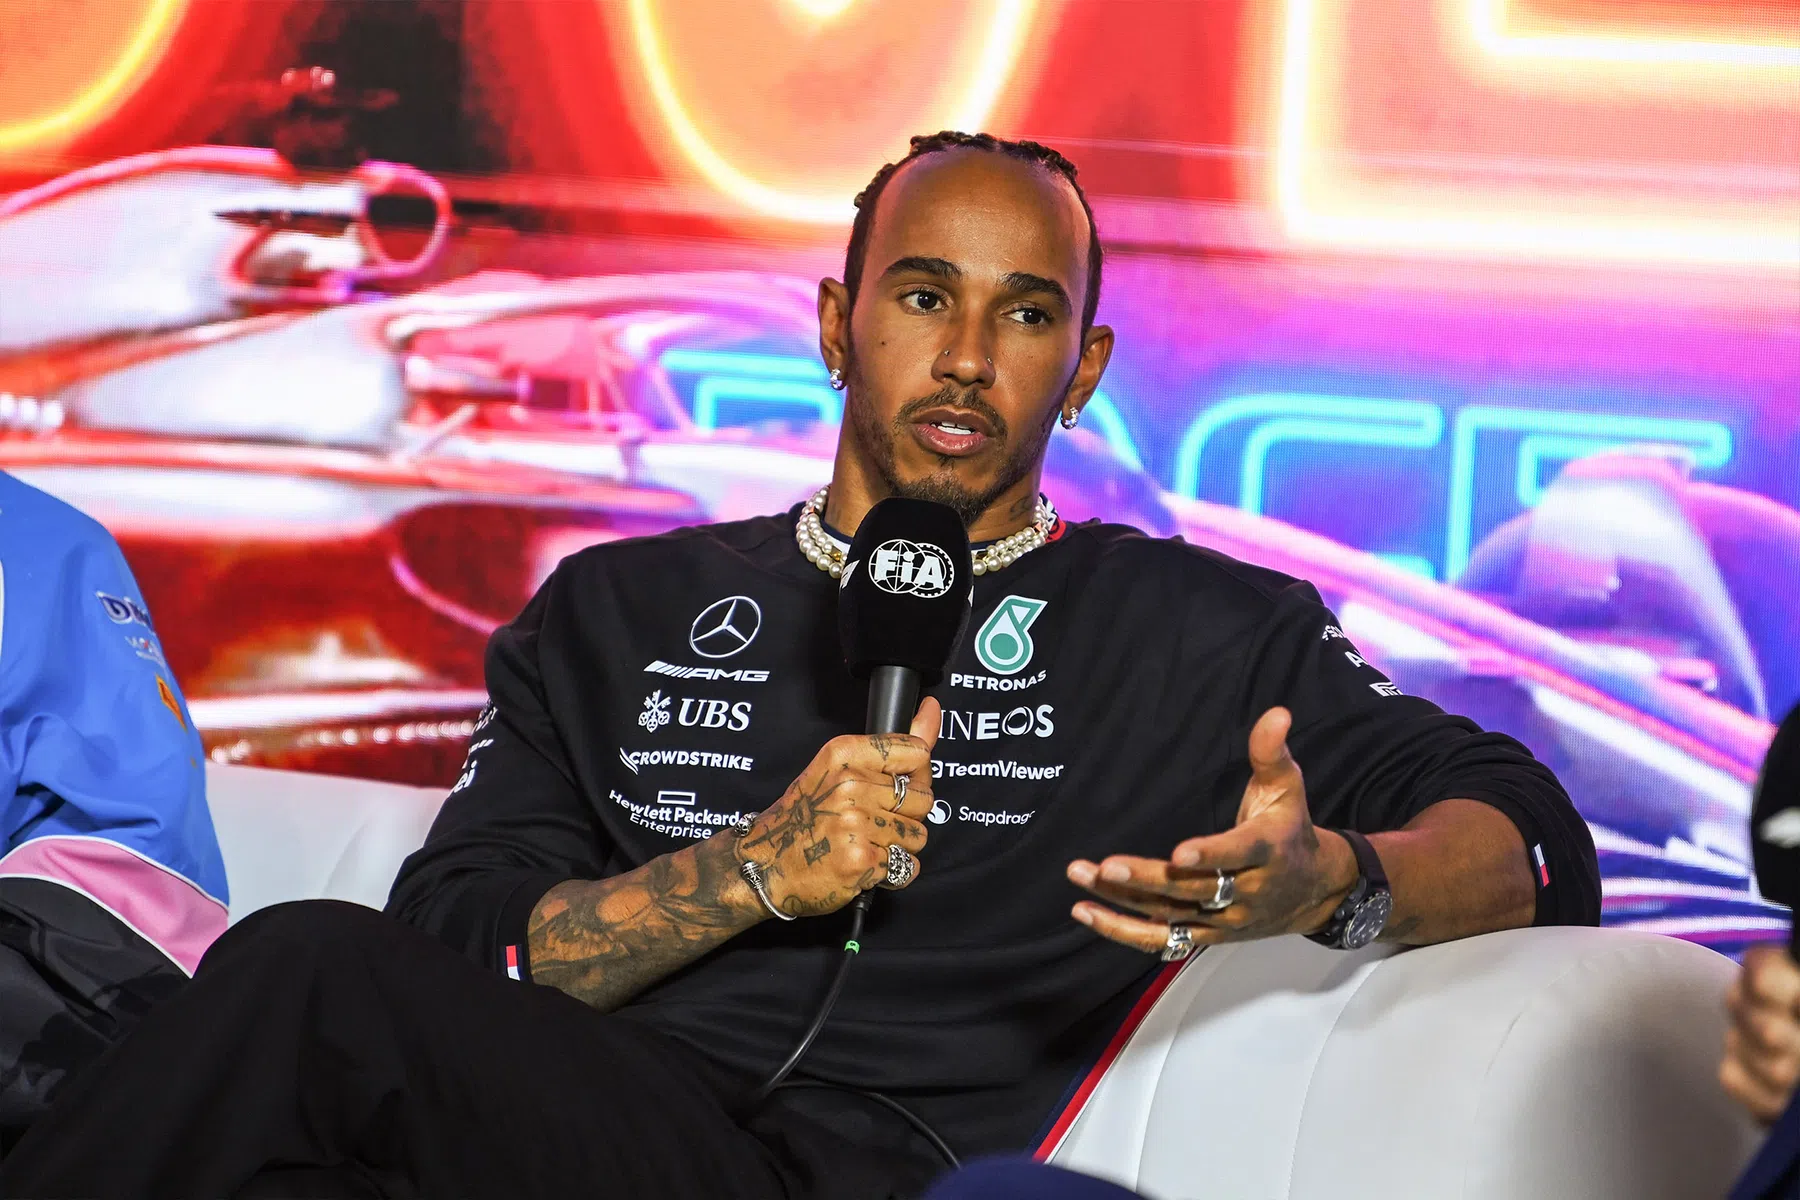 Lewis hamilton vertelt over zijn visie voor F1, hoopt op race in Afrika